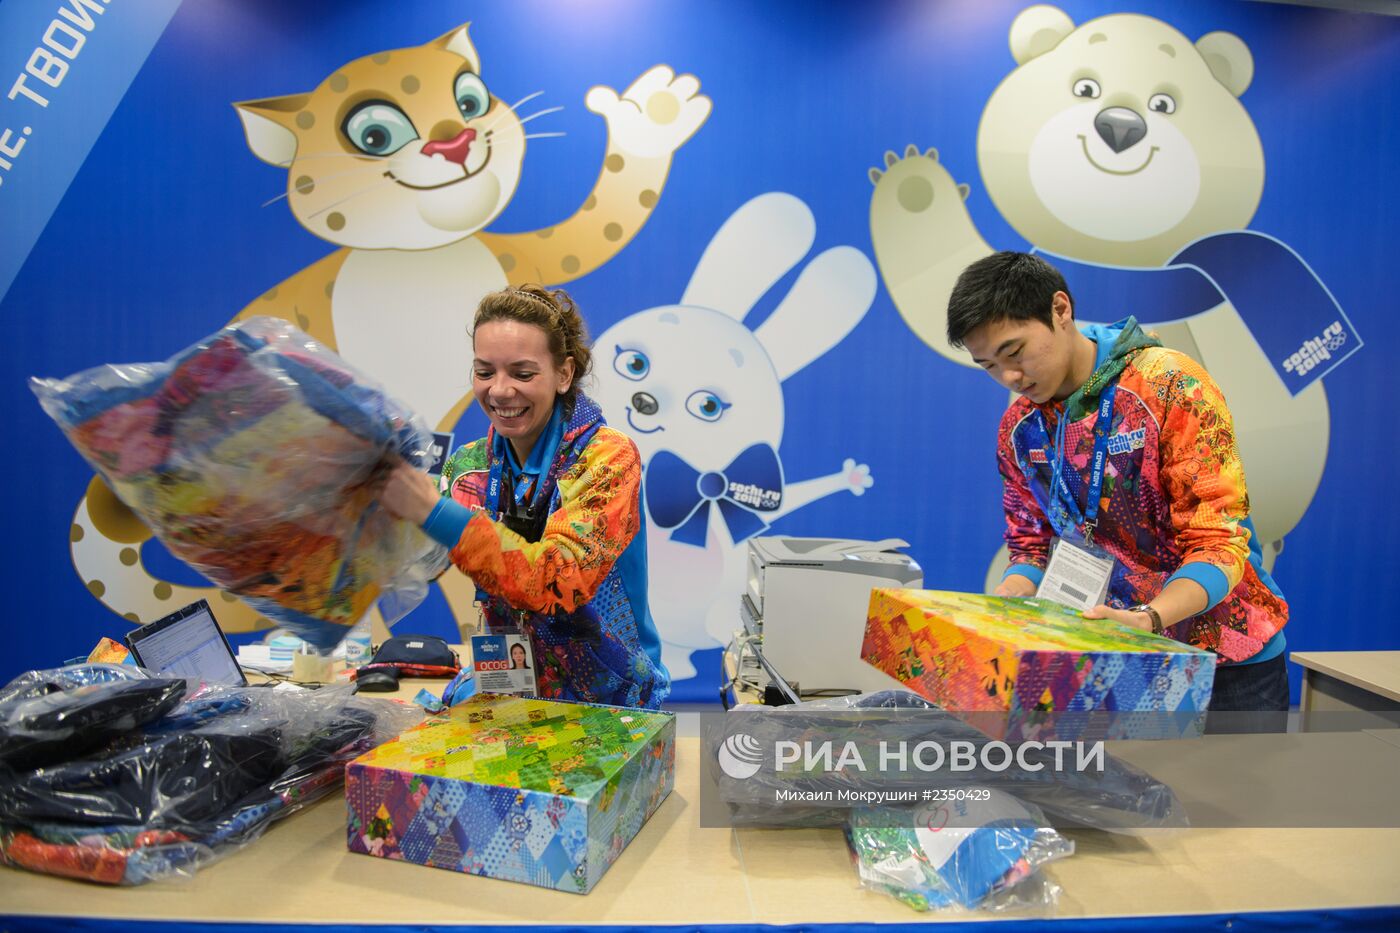 Экипировка волонтеров Олимпийских игр 2014 года в Сочи